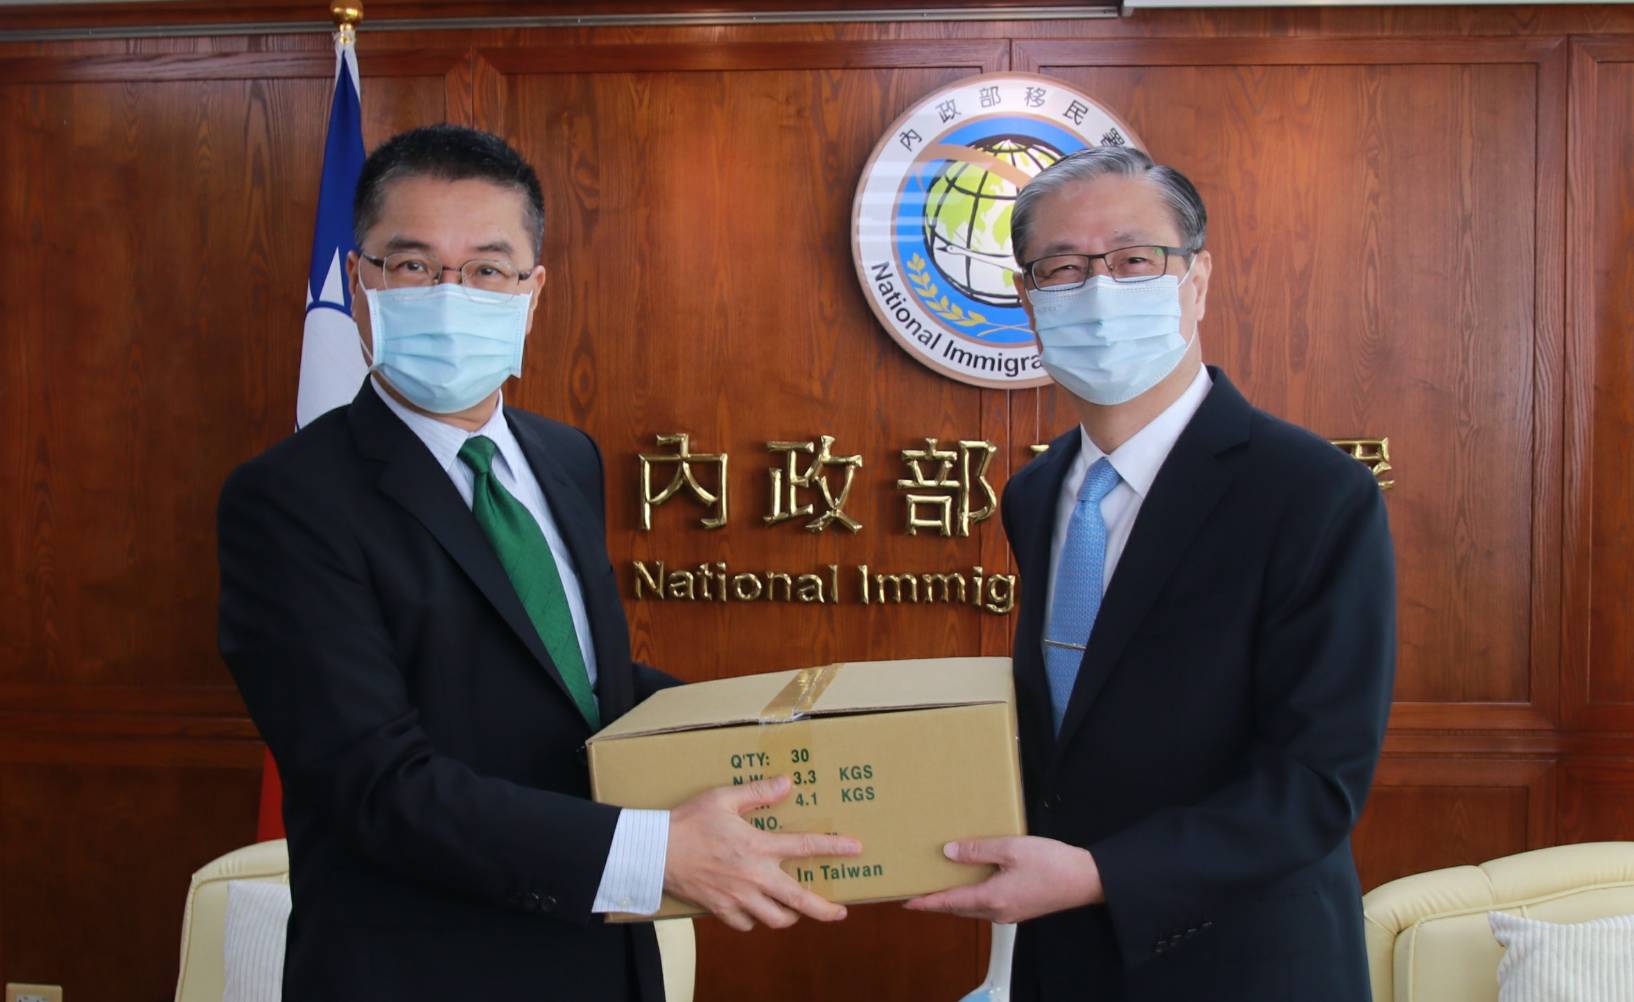 Menteri Dalam Negeri Xu Guo-yong (kiri) mengunjungi Agensi Imigrasi Nasional dan berfoto bersama Ketua Agensi Imigrasi Nasional Zhong Jing-hun (kanan). Sumber: Agensi Imigrasi Nasional 